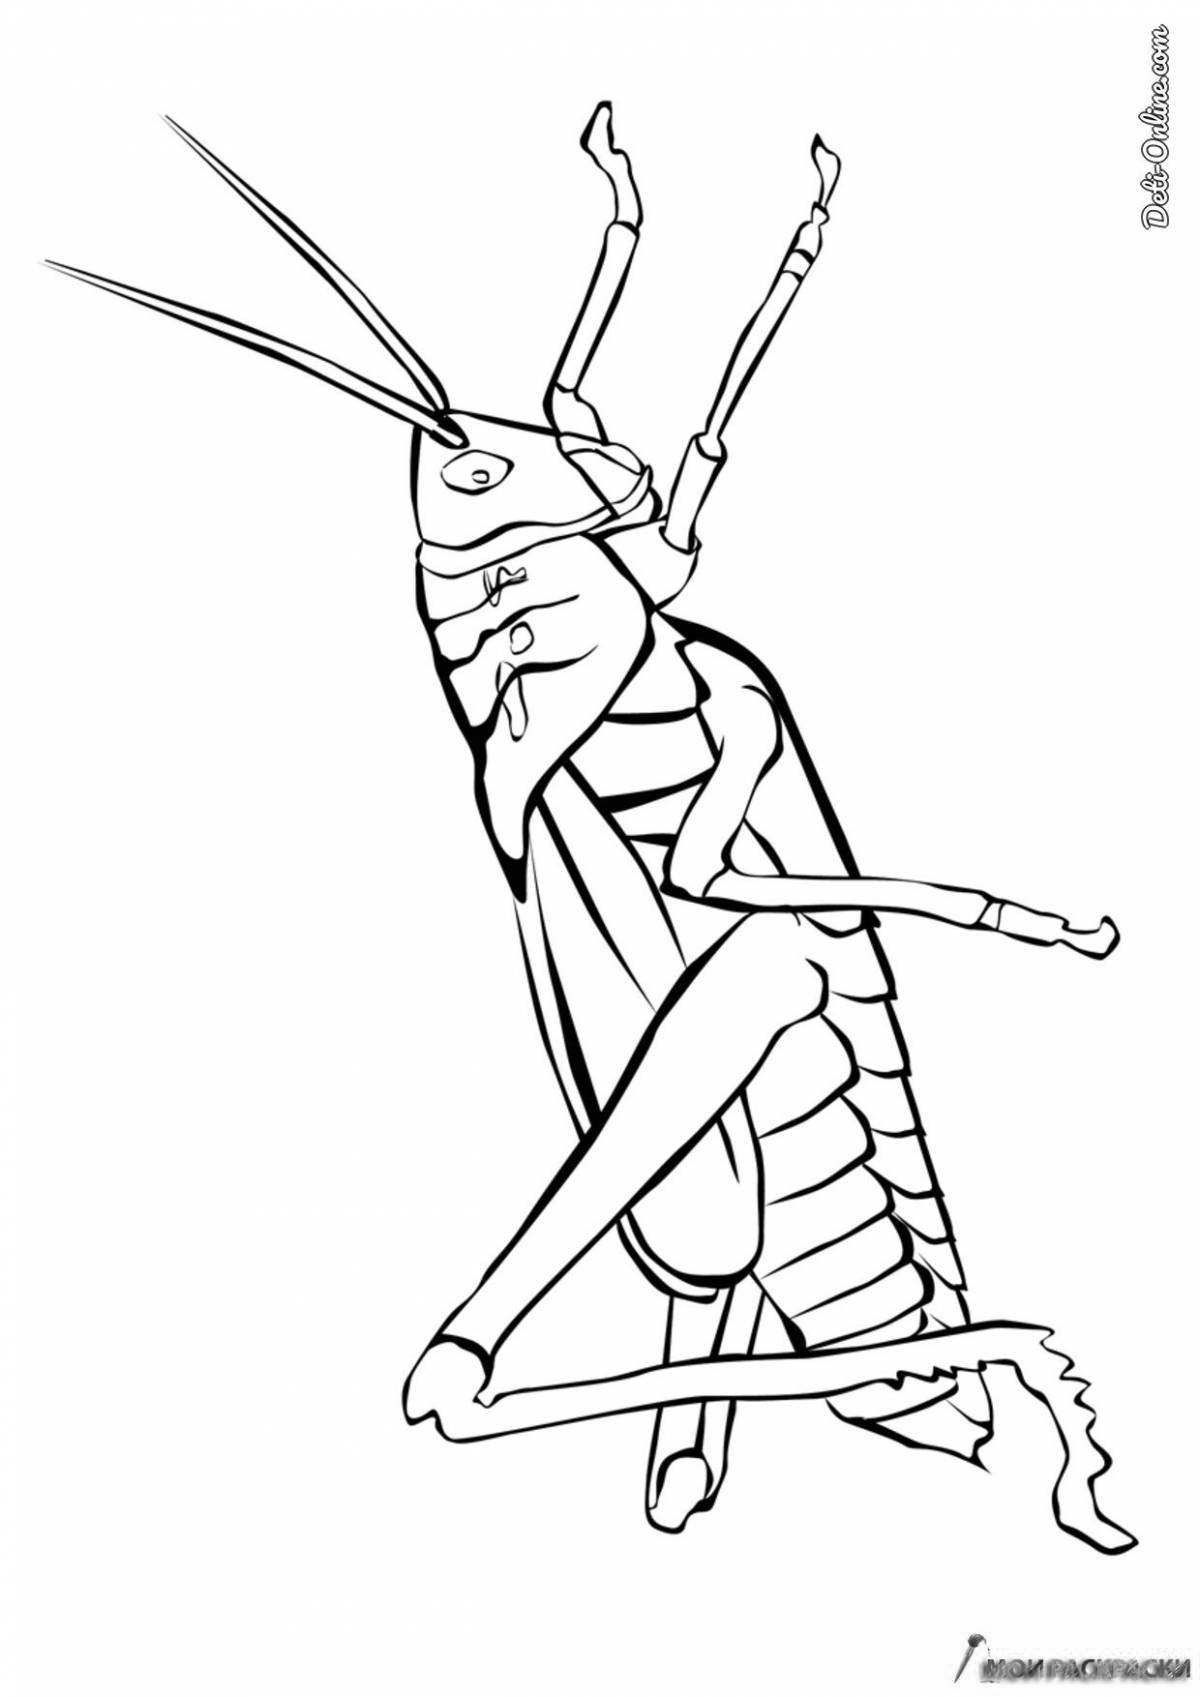 Magic locust coloring page